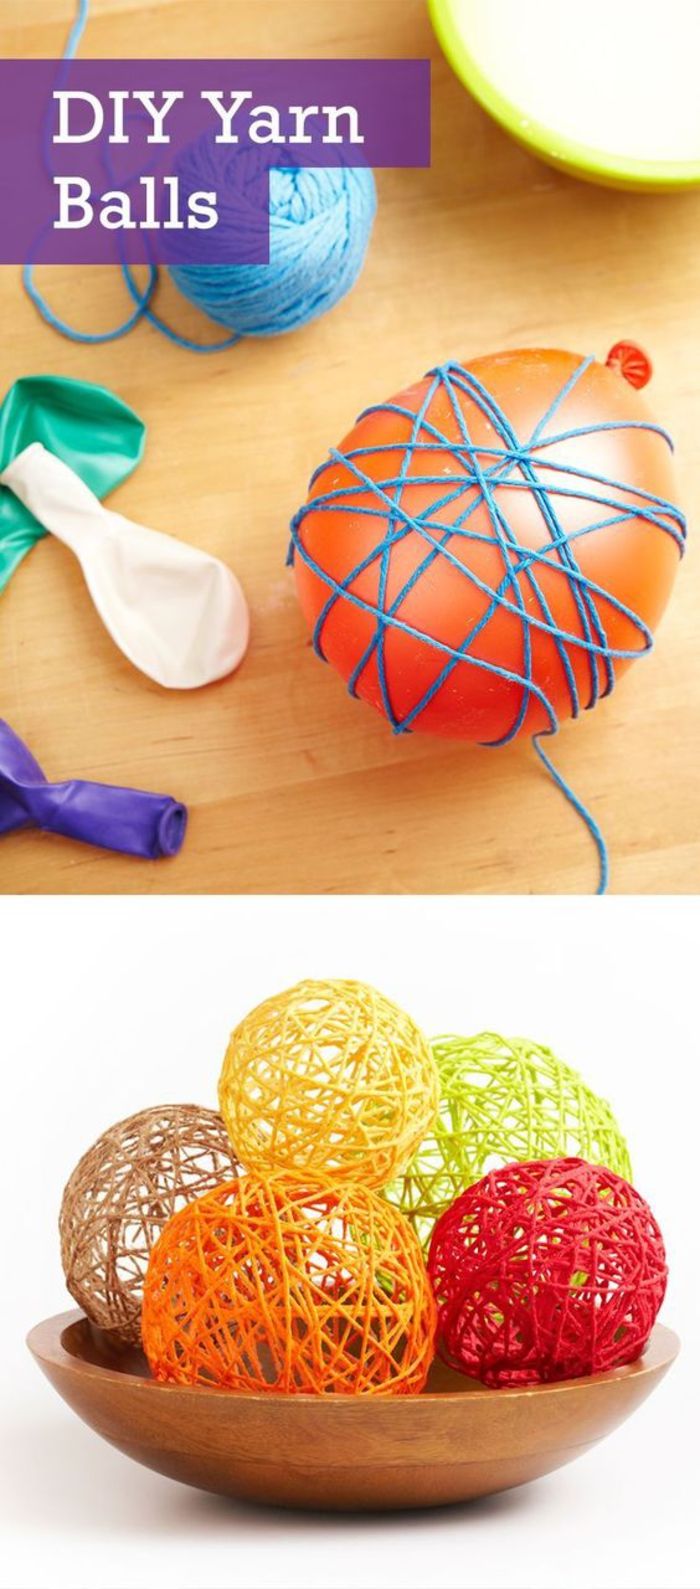 samodzielnie uformuj kolorowe kulki, materiały: balony, przędza, klej, pomysły DIY dla dzieci